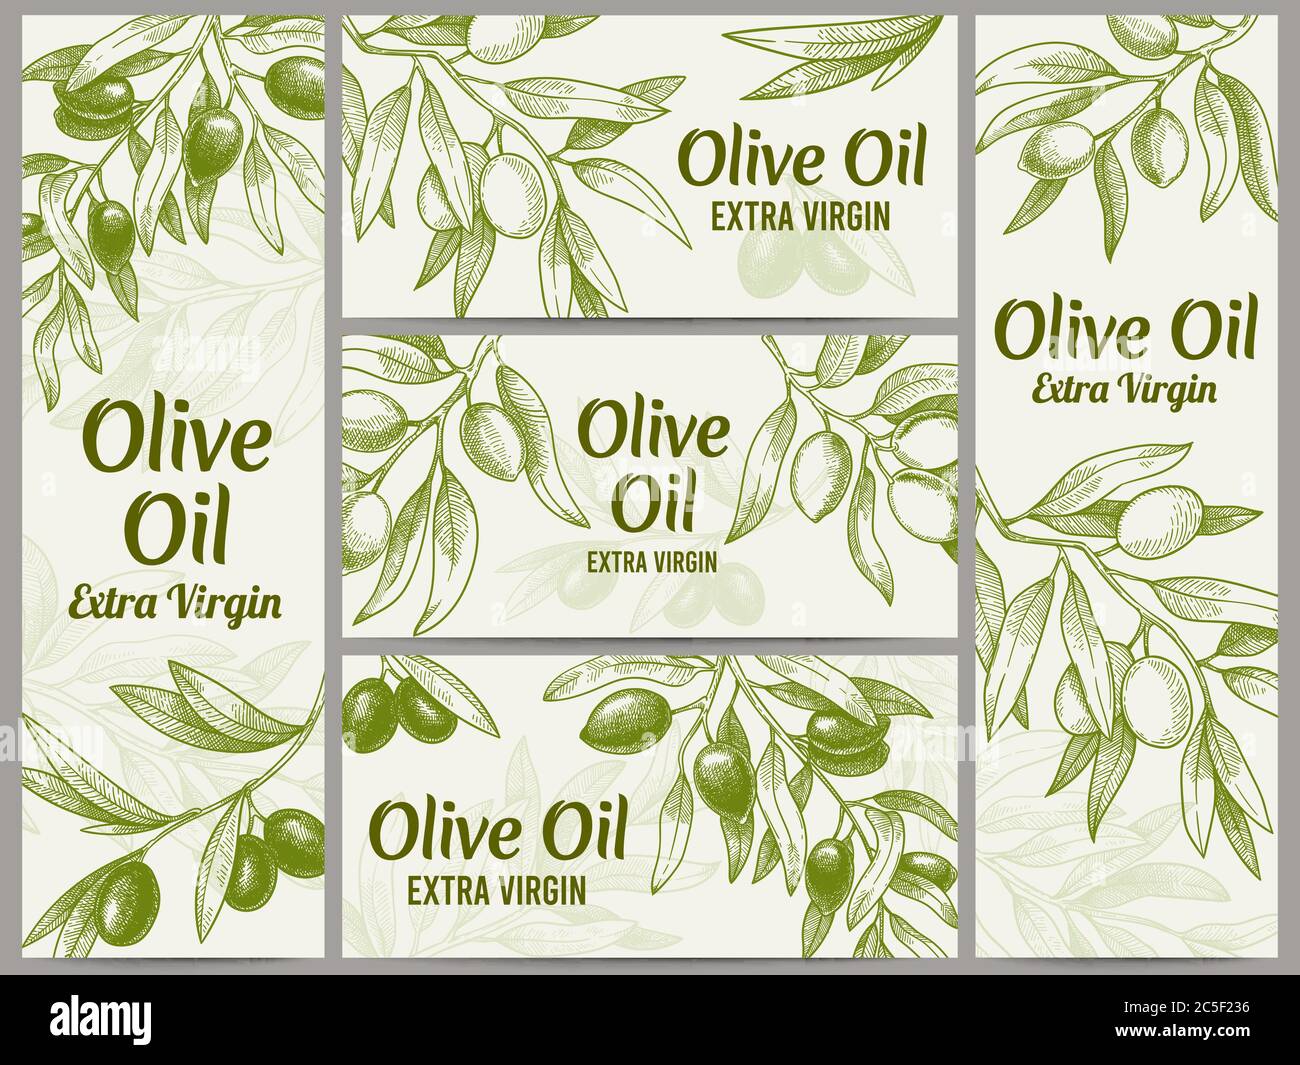 Banner olio d'oliva. Etichette di oli organici, rami di olive verdi e set di illustrazioni vettoriali per etichette vettoriali extra vergini Illustrazione Vettoriale